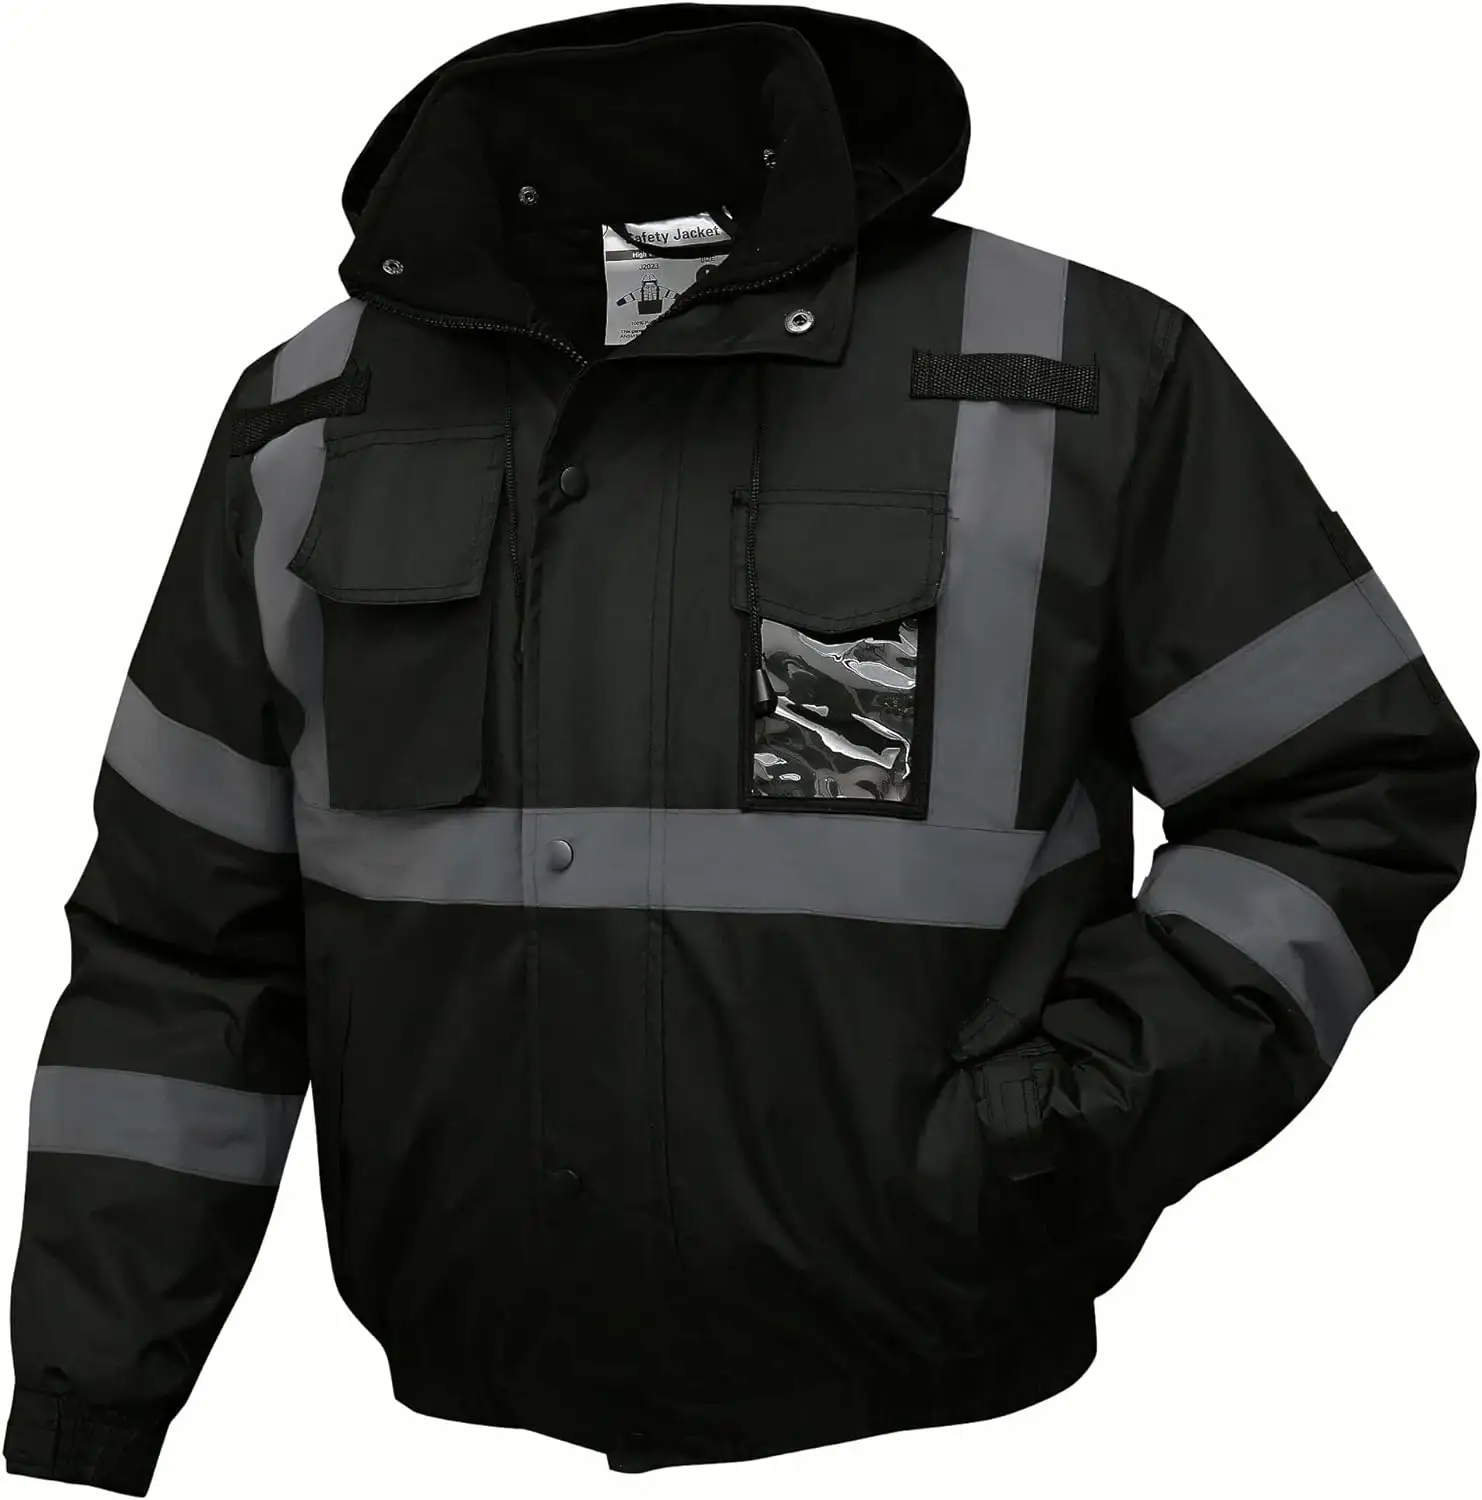 HCSP 사용자 정의 스포츠 방수 겨울 안전 조끼 반사 안전 의류 높은 가시성 멘 반사 러닝 재킷